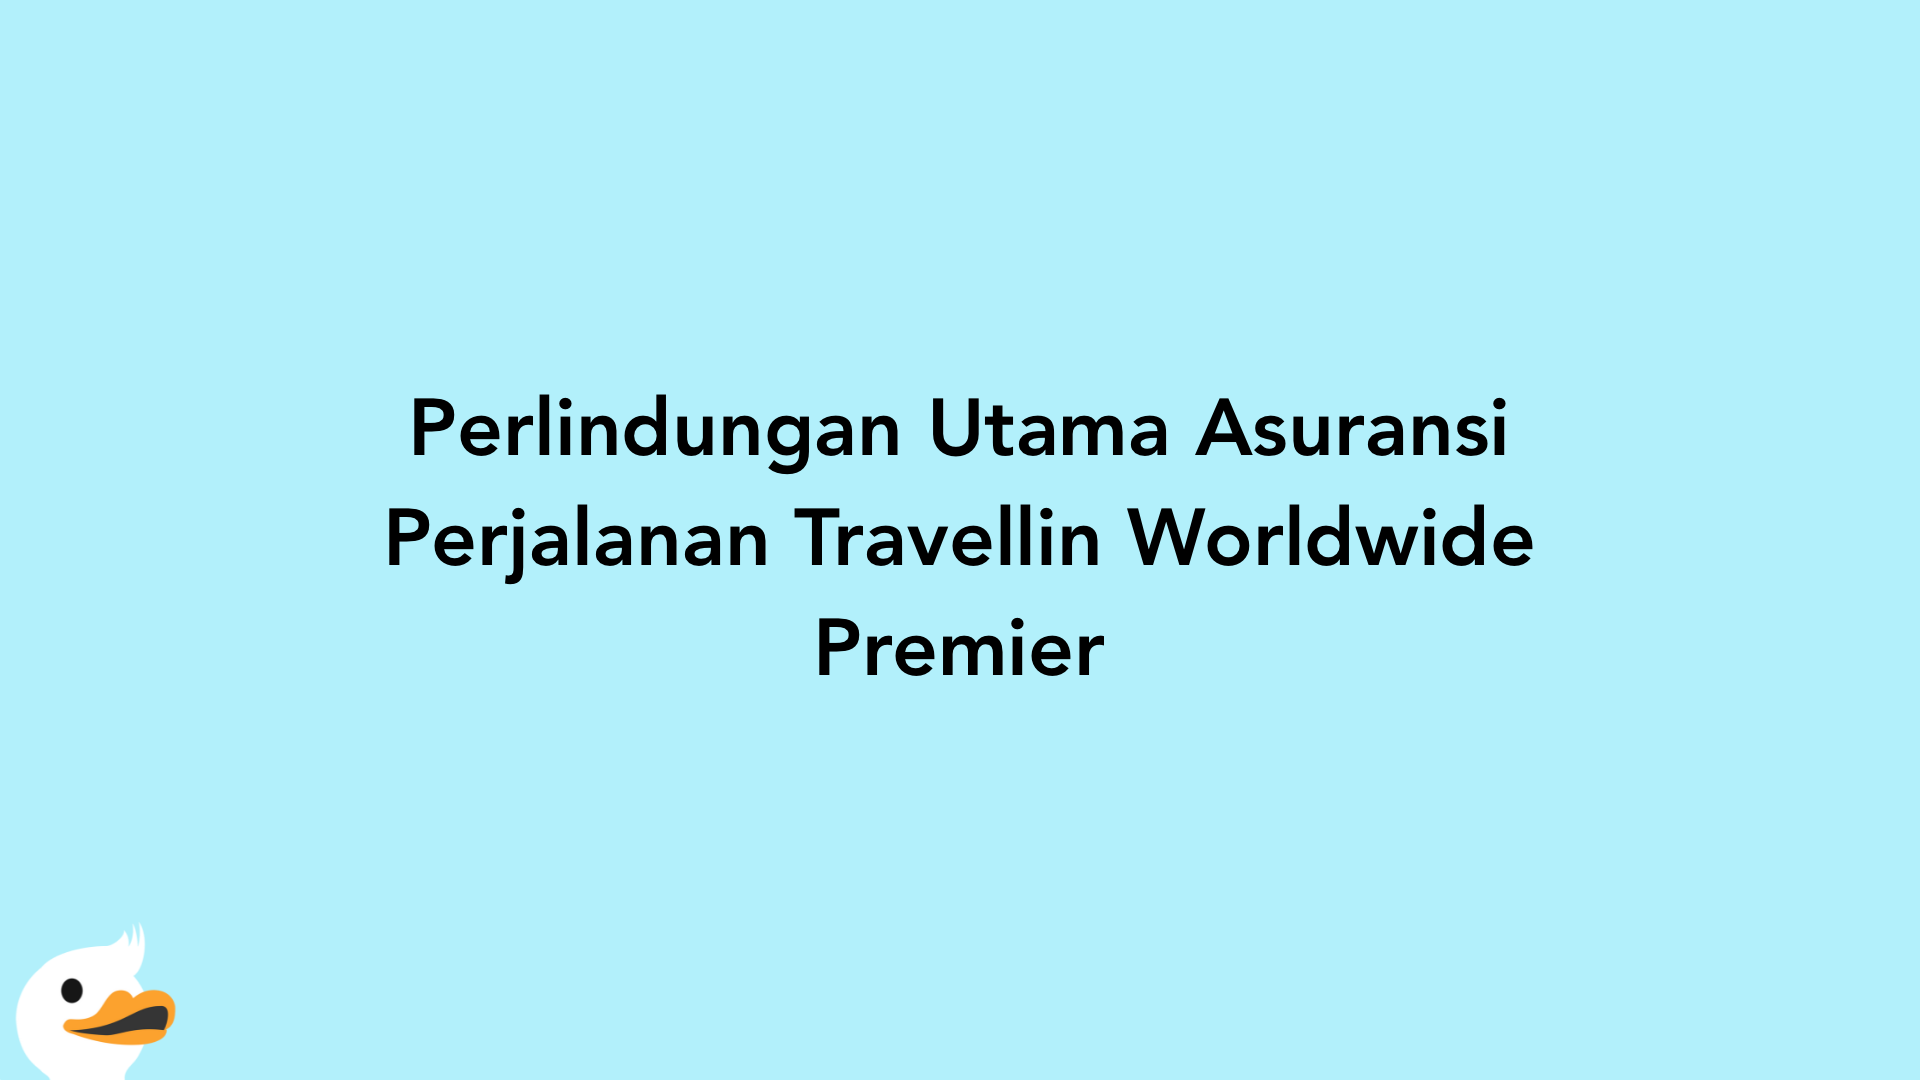 Perlindungan Utama Asuransi Perjalanan Travellin Worldwide Premier